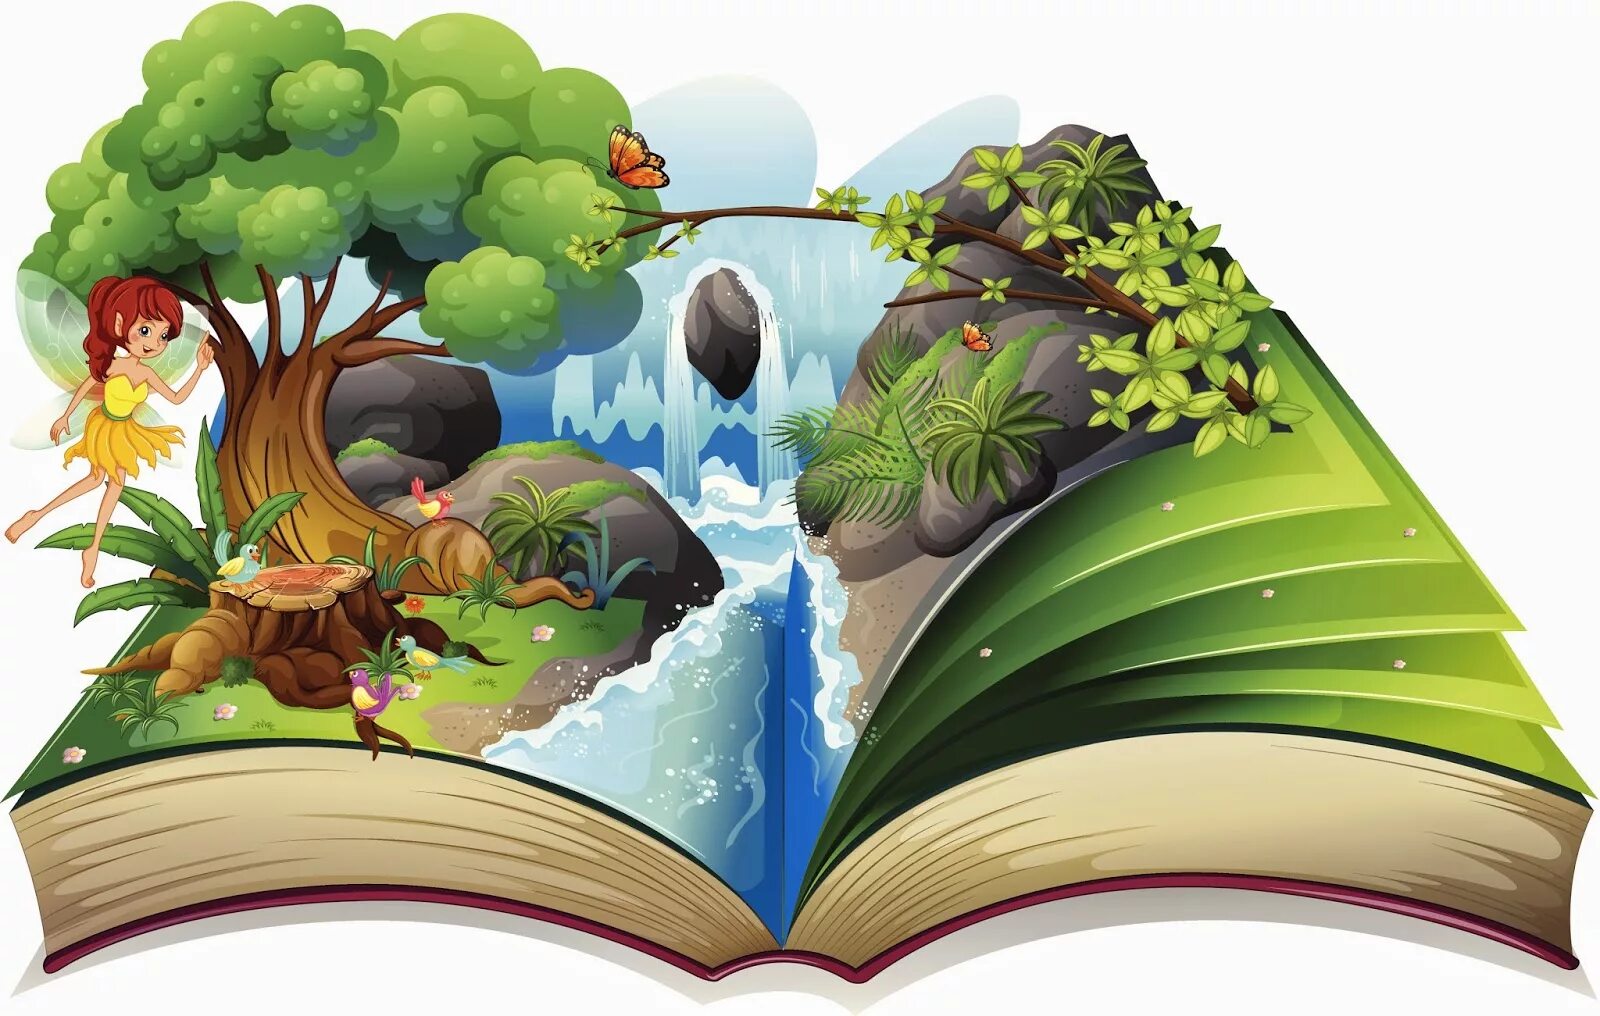 Окружающий мир сценарии. Путешествие в мир сказок. Иллюстрации к книгам. Сказочные книги для детей. Раскрытая детская книга.